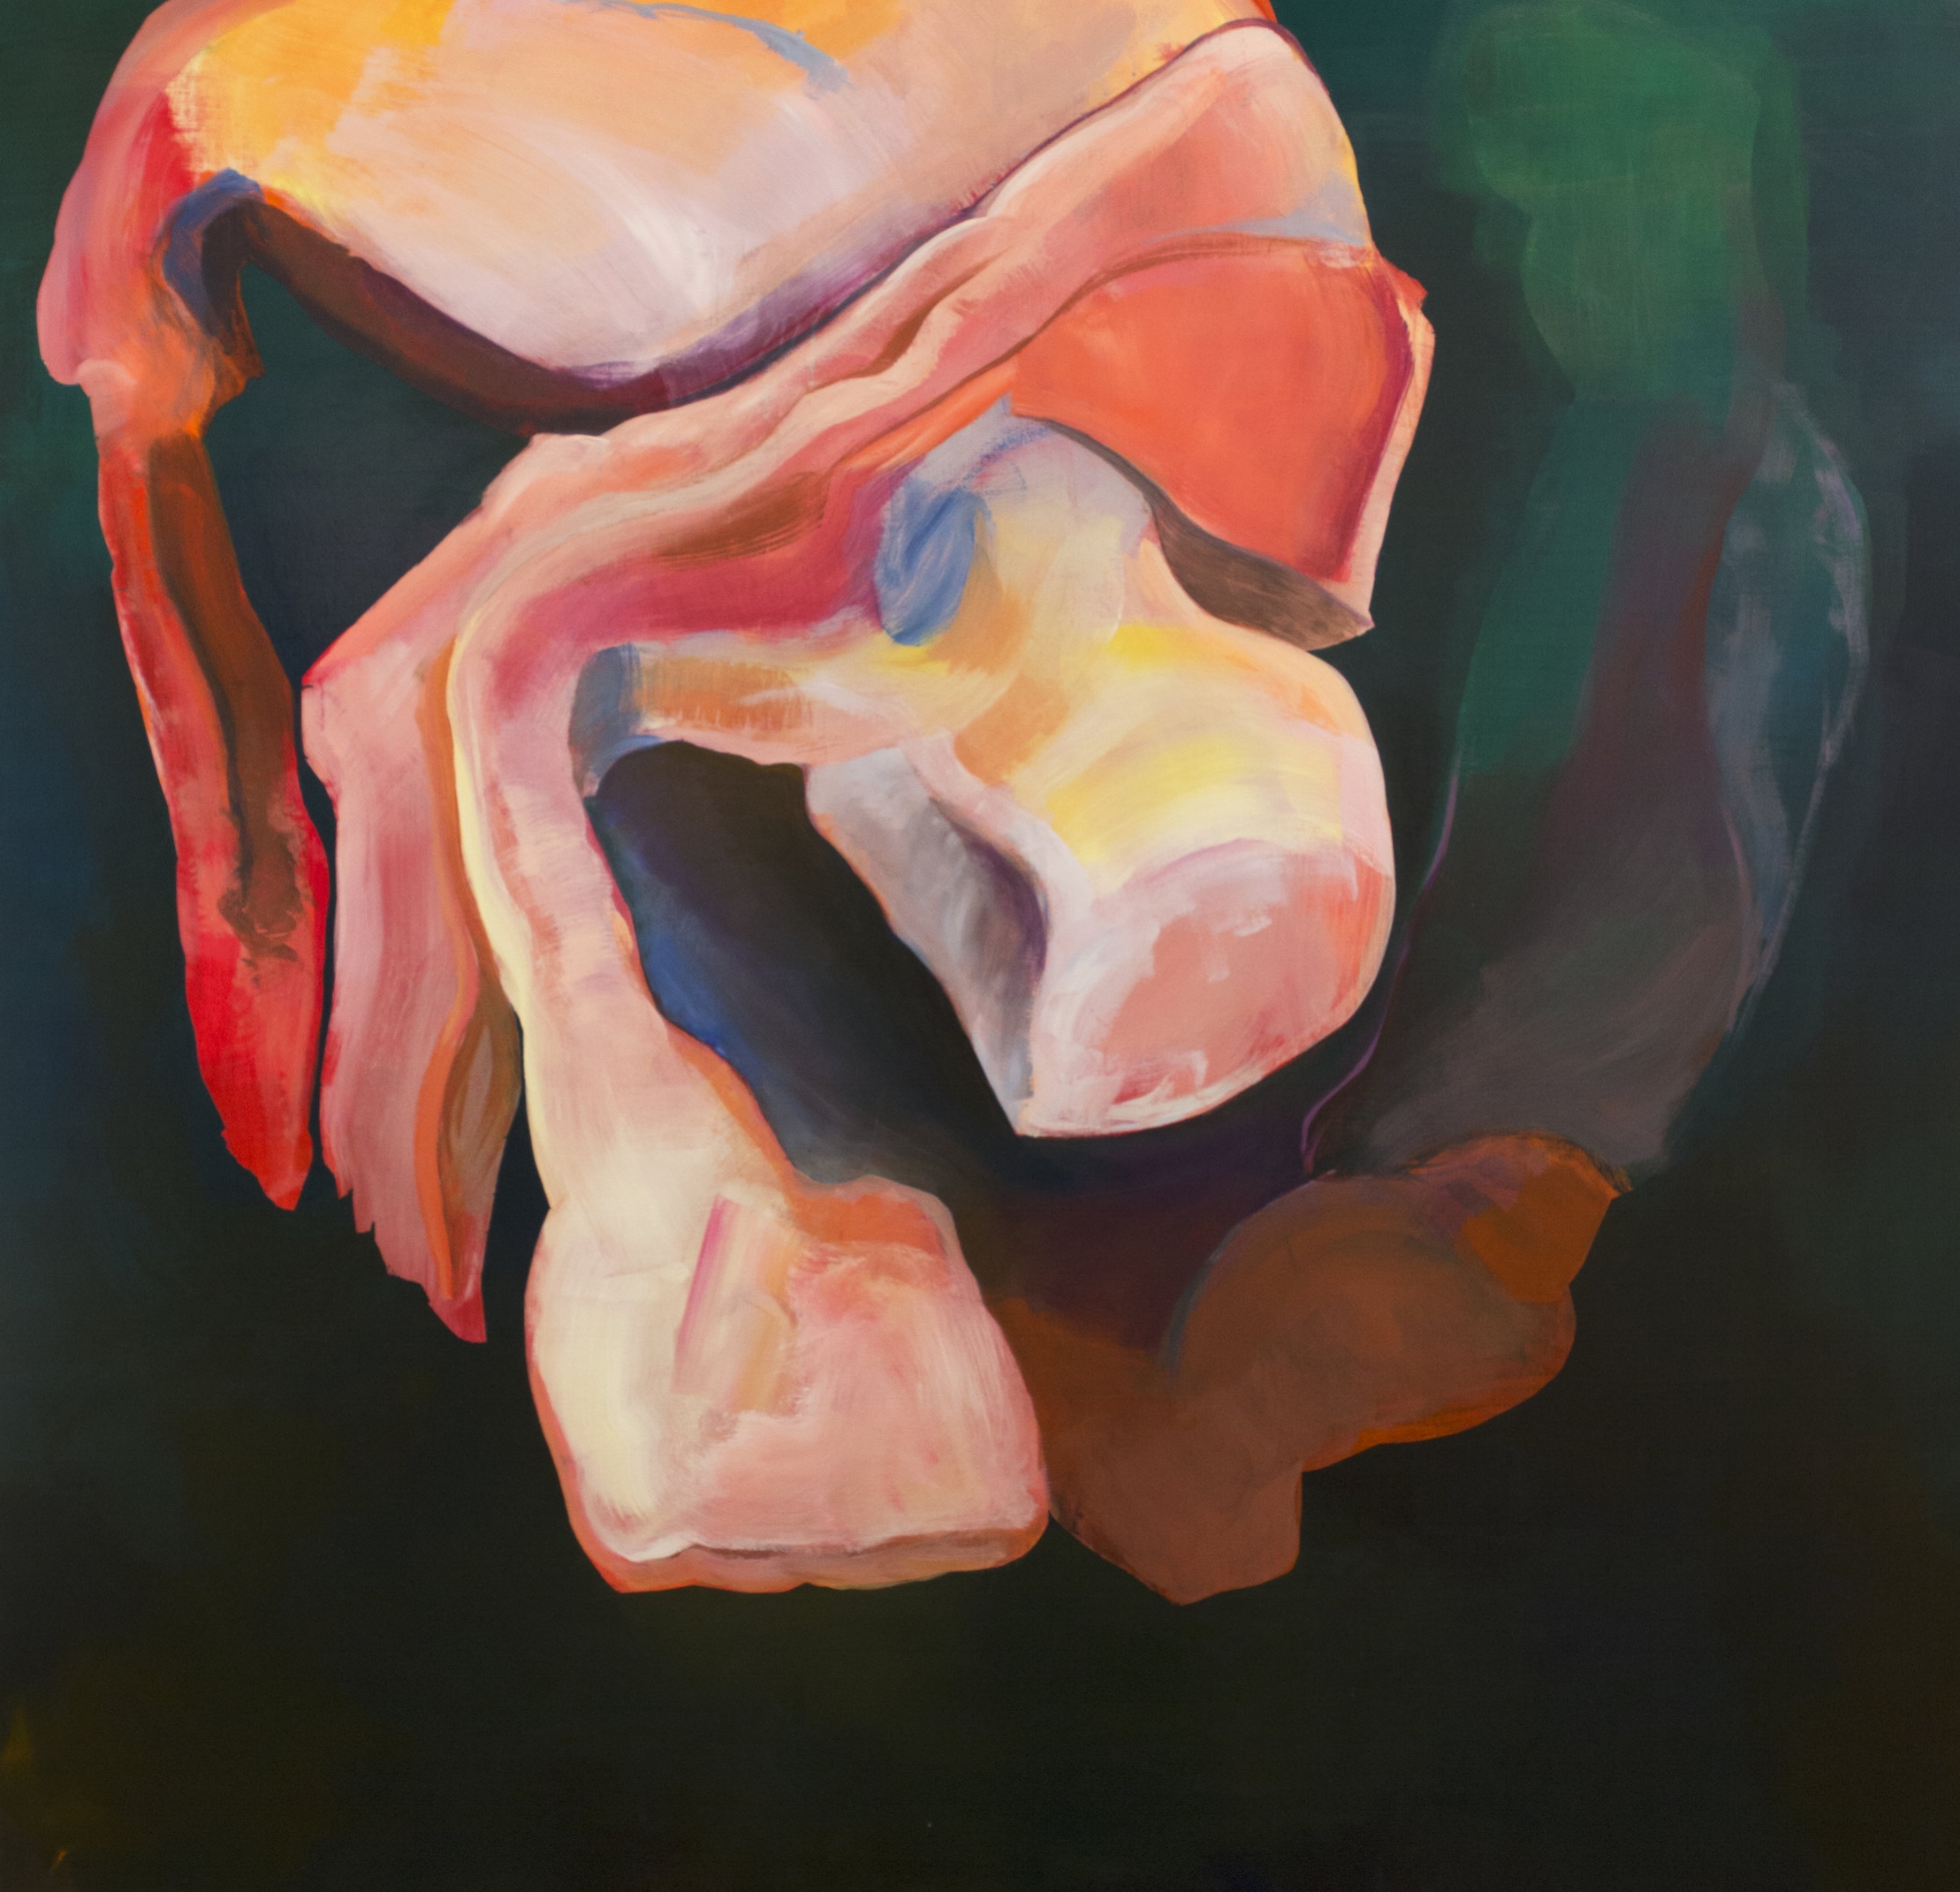   Inner Body,&nbsp; acrylic on canvas, 48" x 48", 2016 